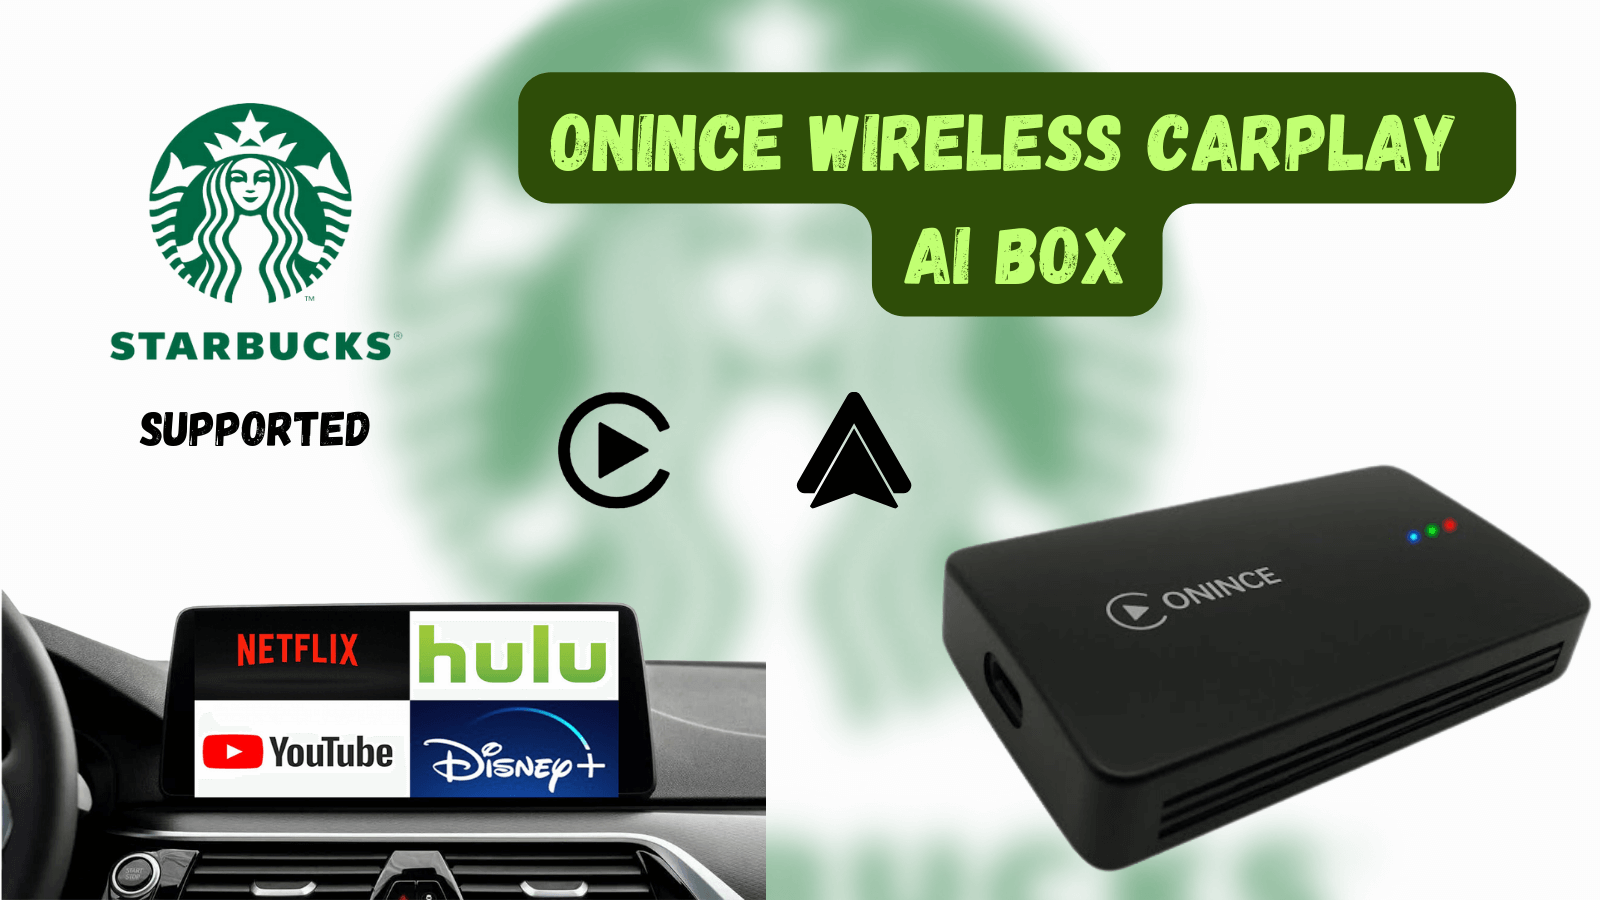 Onince Ai box wireless CarPlay Adapter